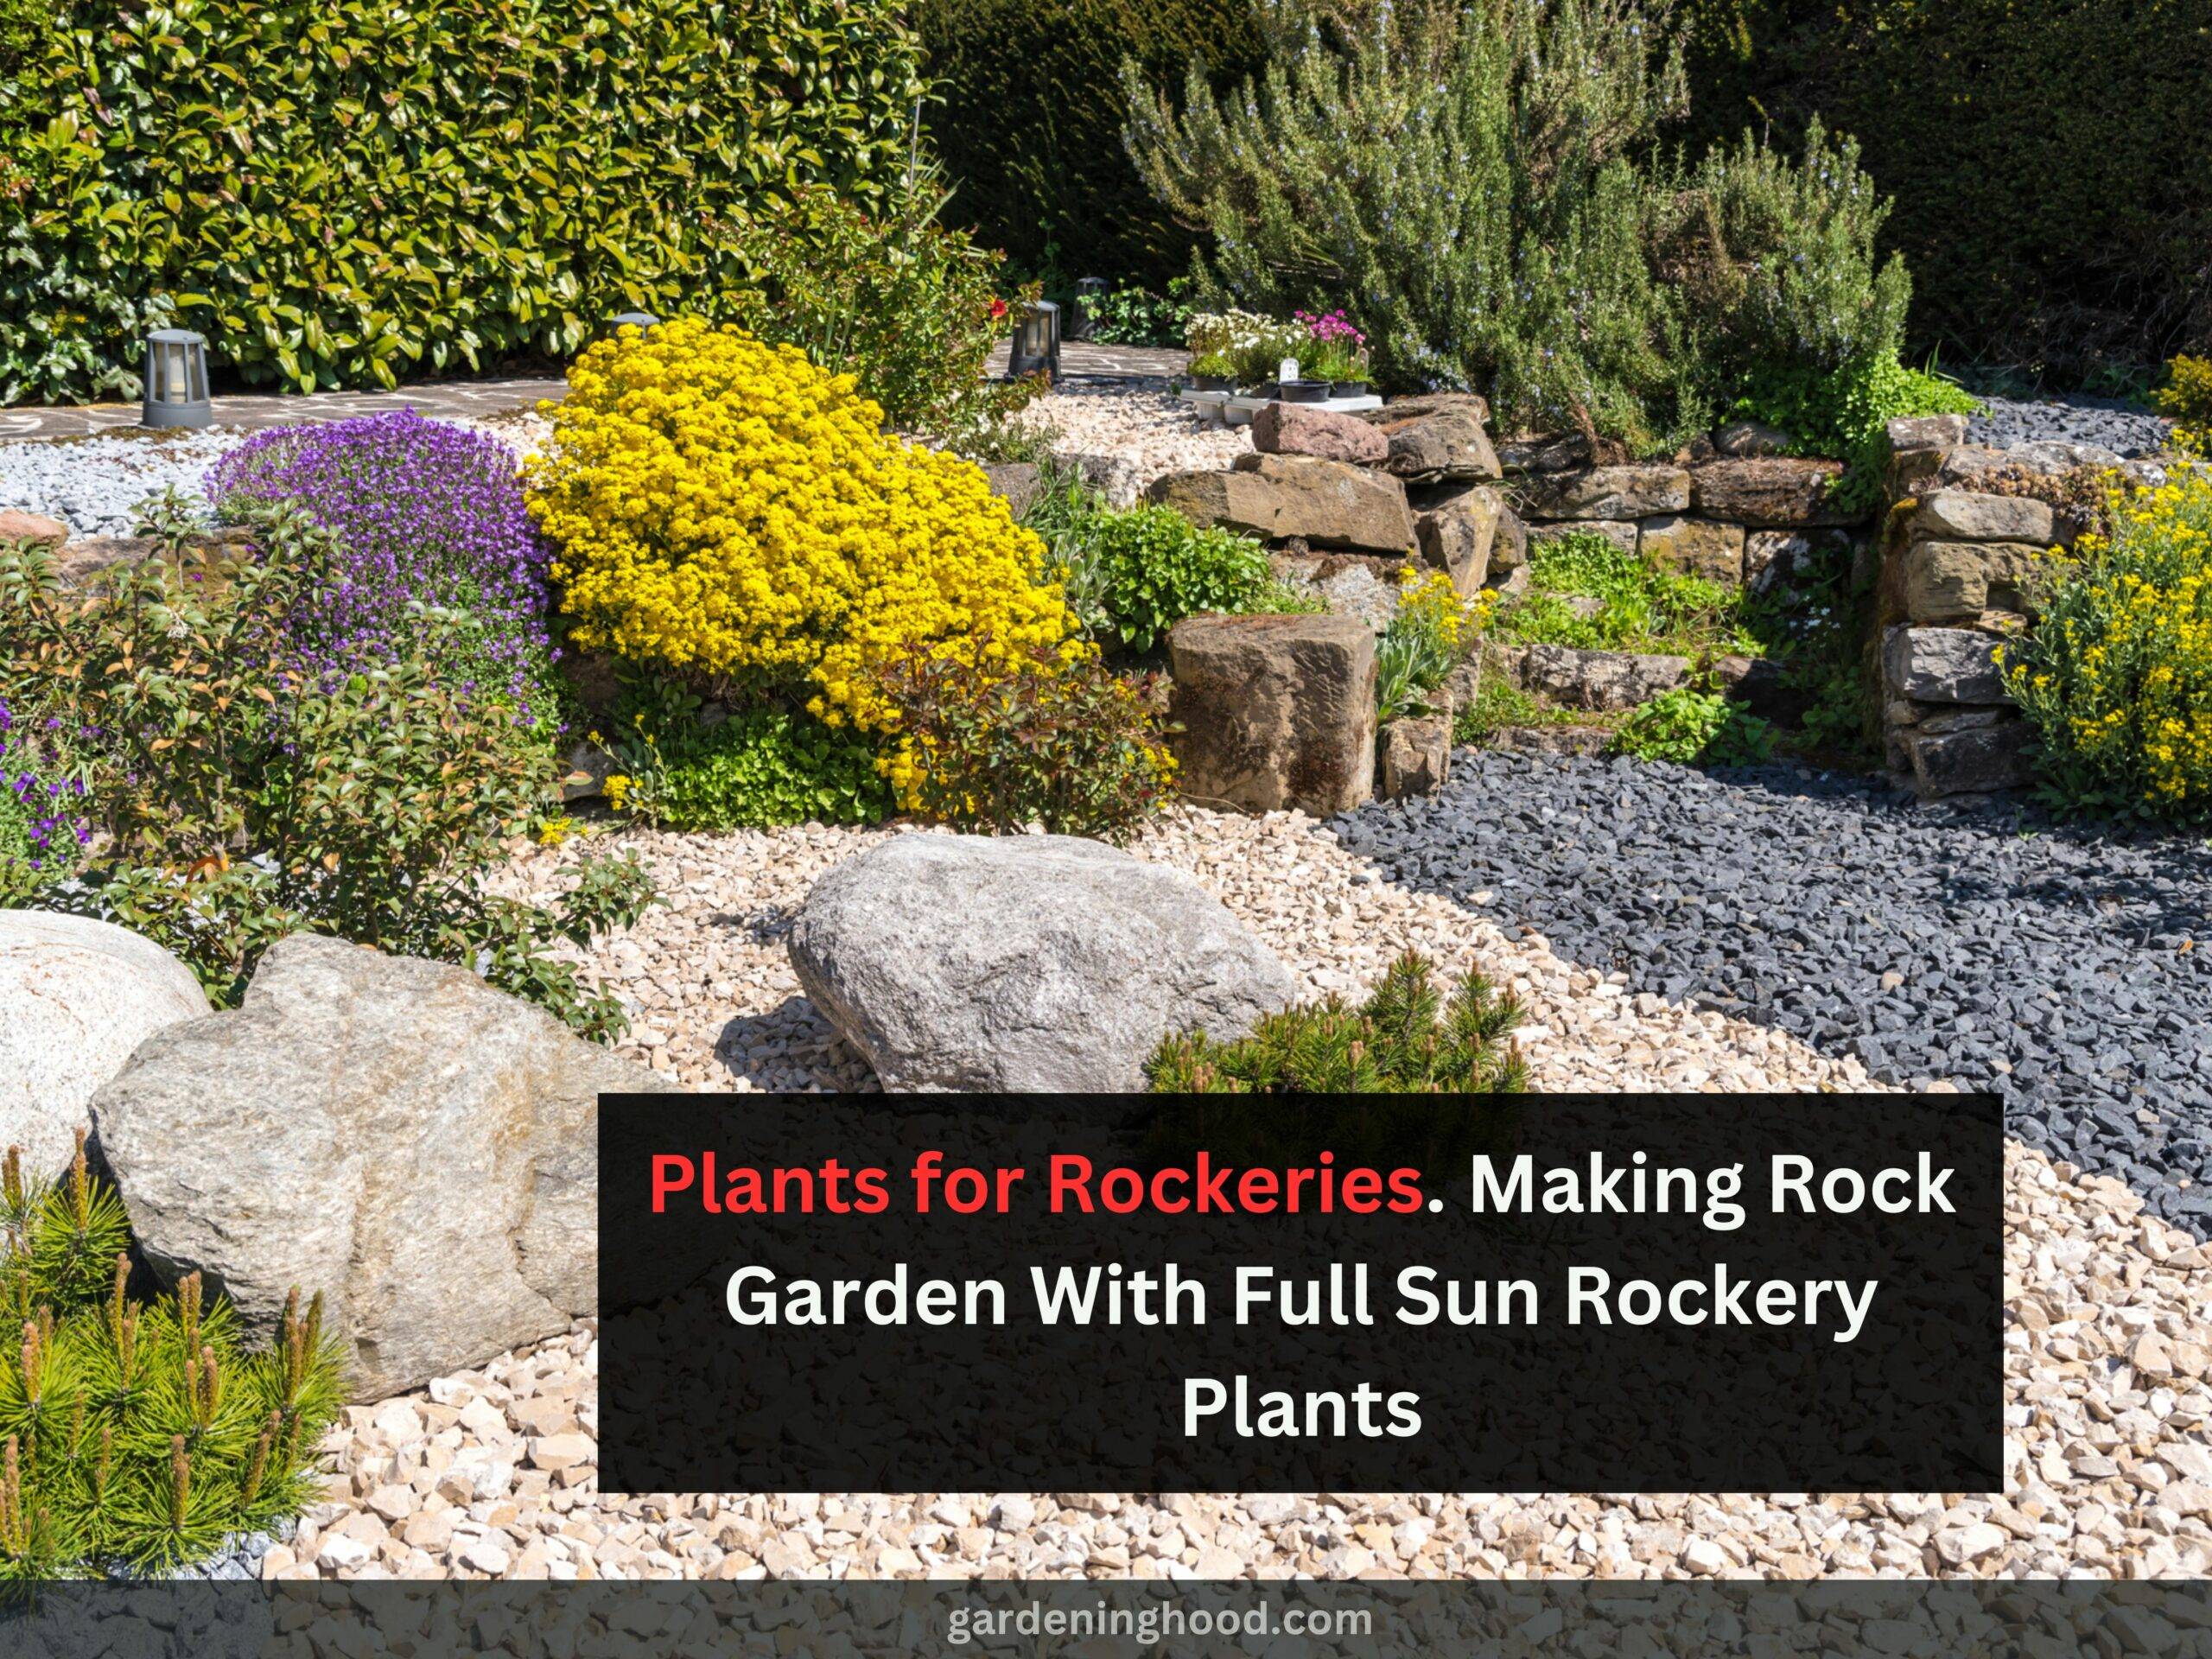 Plants for Rockeries- Making Rock Garden With Full Sun Rockery Plants